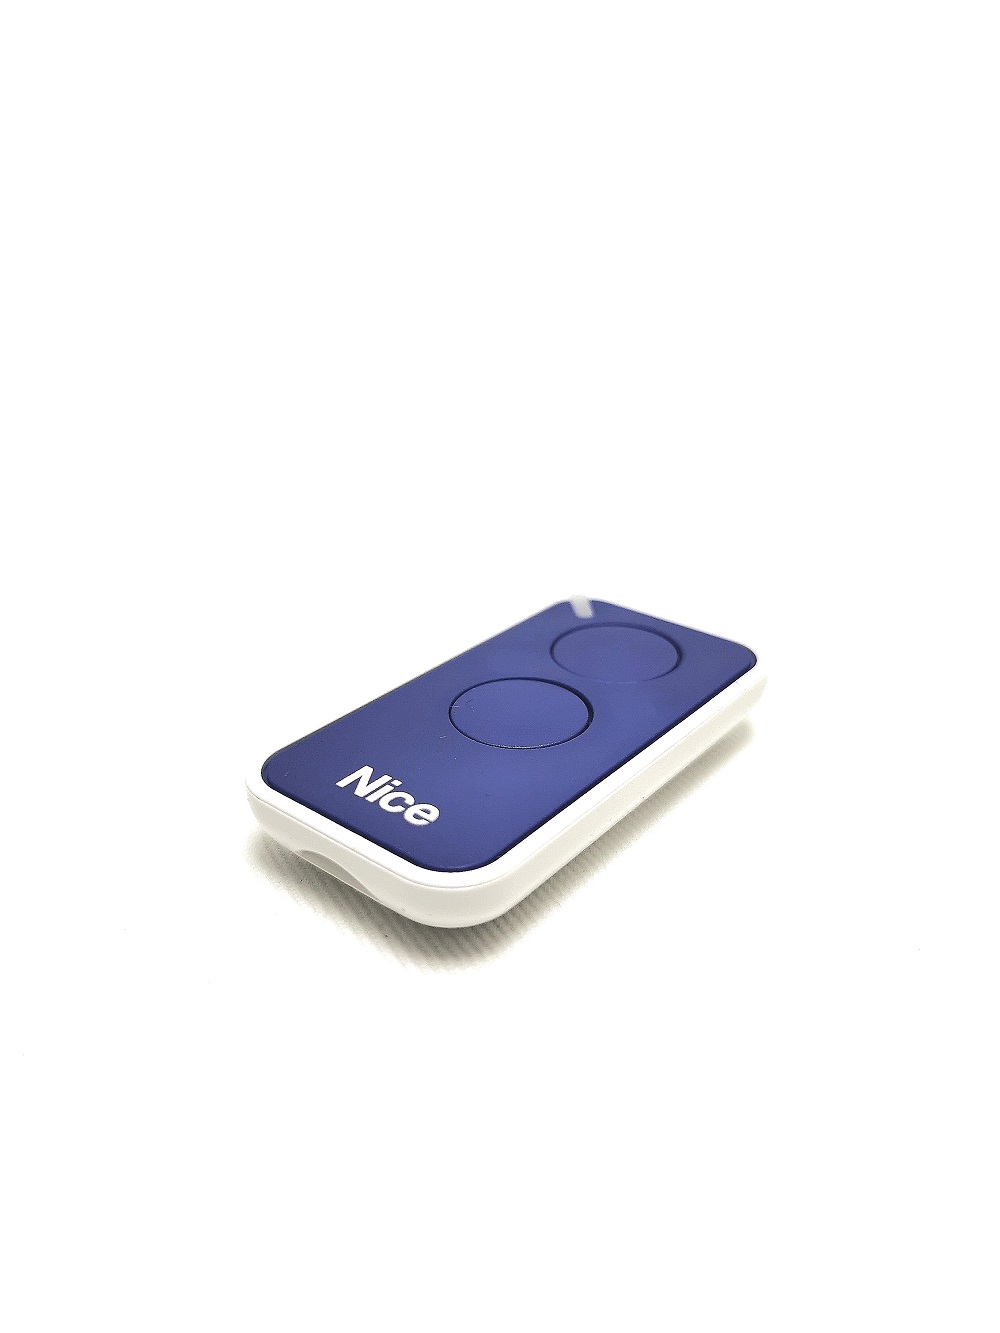 Télécommande Nice INTI2B bleue miniaturisée – 2 canaux - Fréquence 433Mhz - Programmation simple permettant la gestion de tous les automatismes.